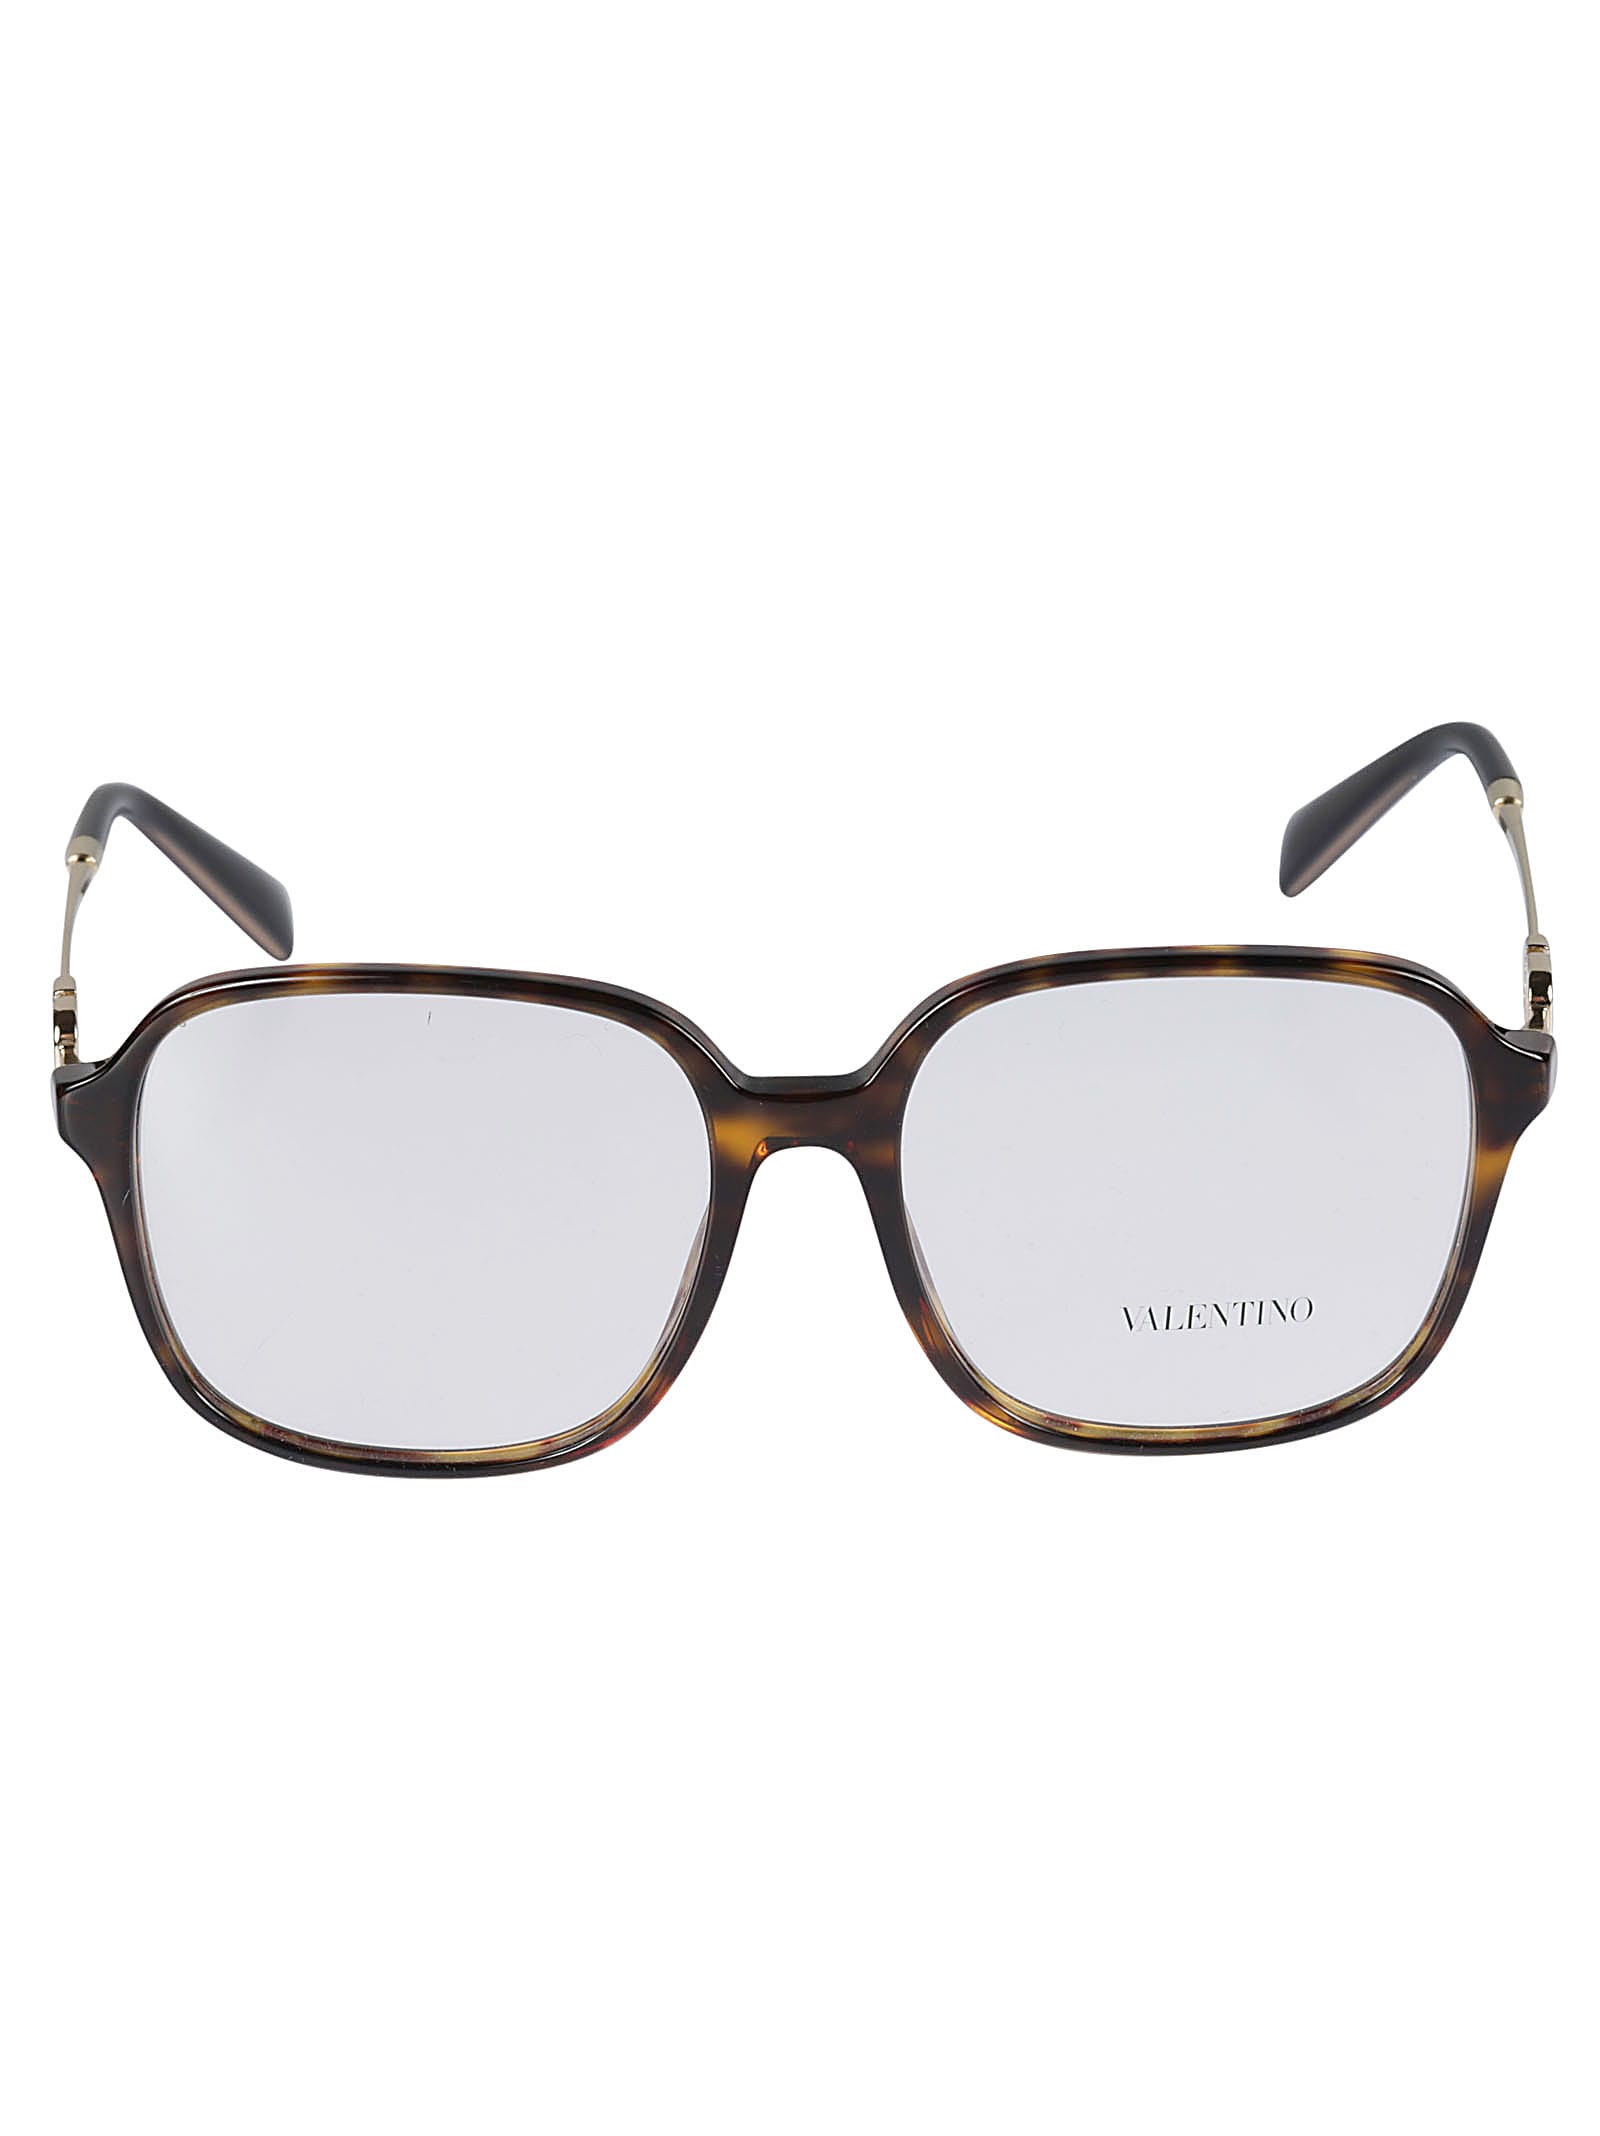 Valentino Vista5002 Glasses